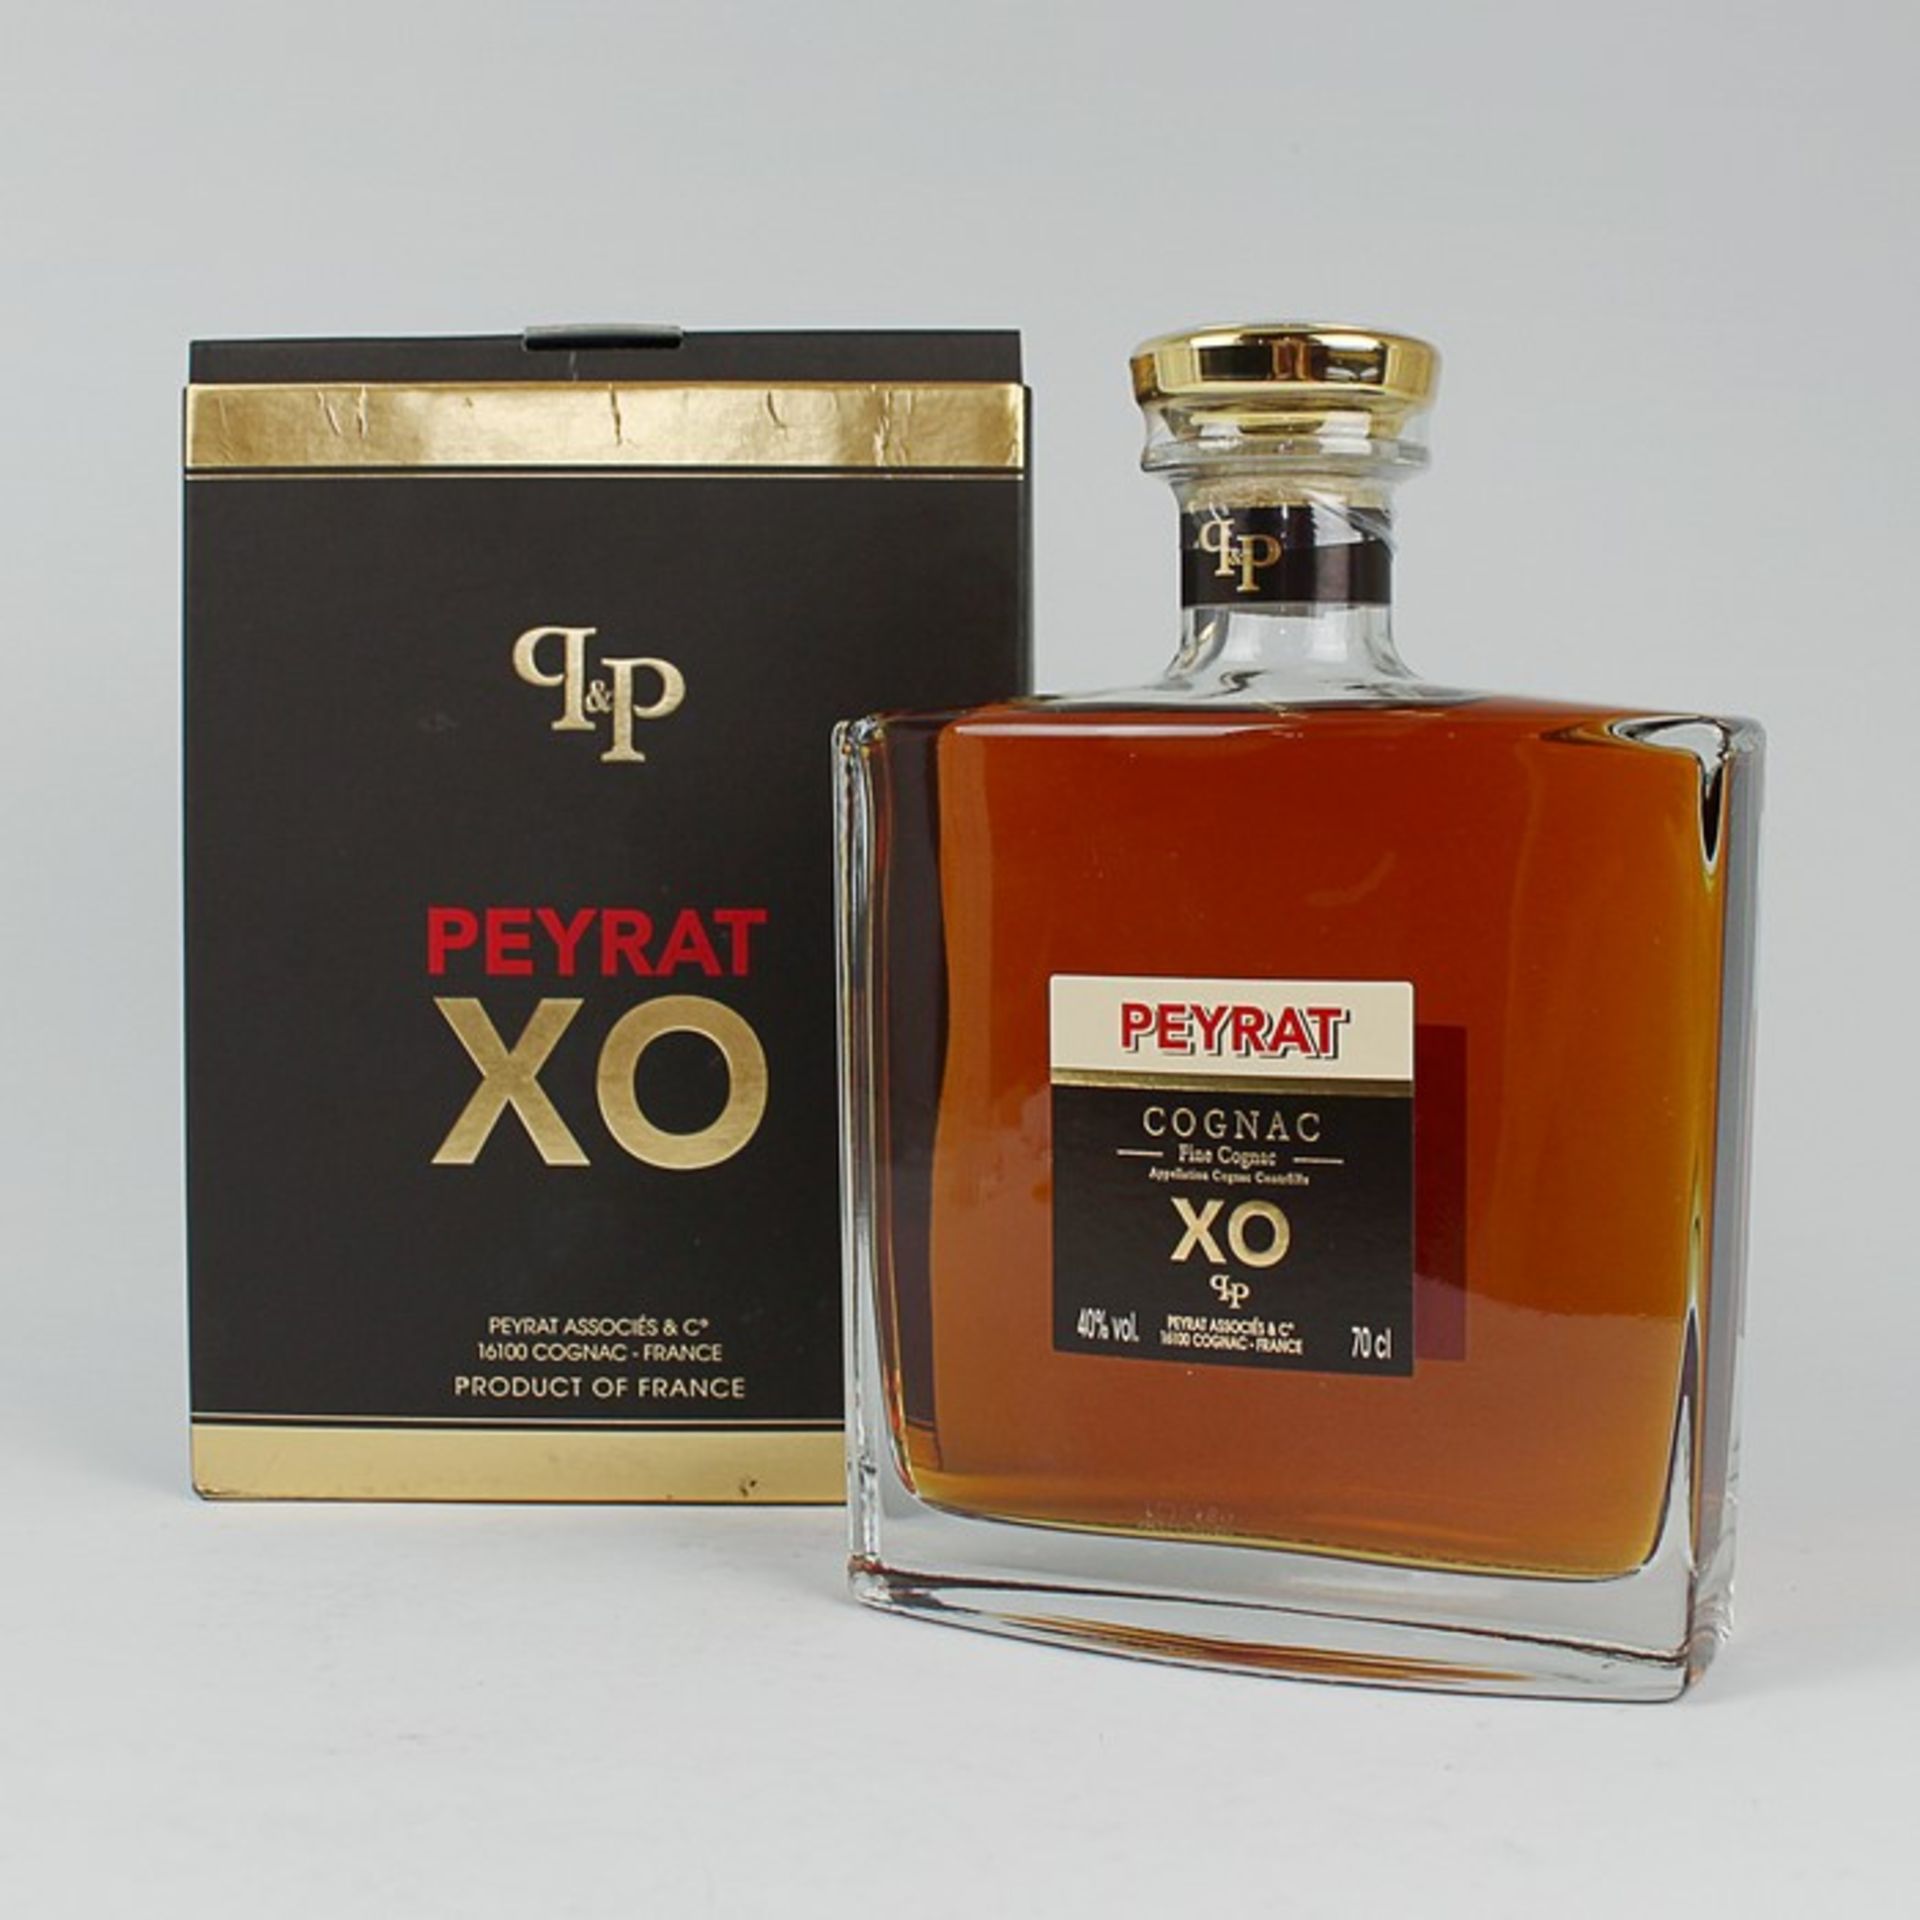 CognacFrankreich, Peyrat XO fine cognac, 40 % vol., 70 cl., OK, ungeöffnet